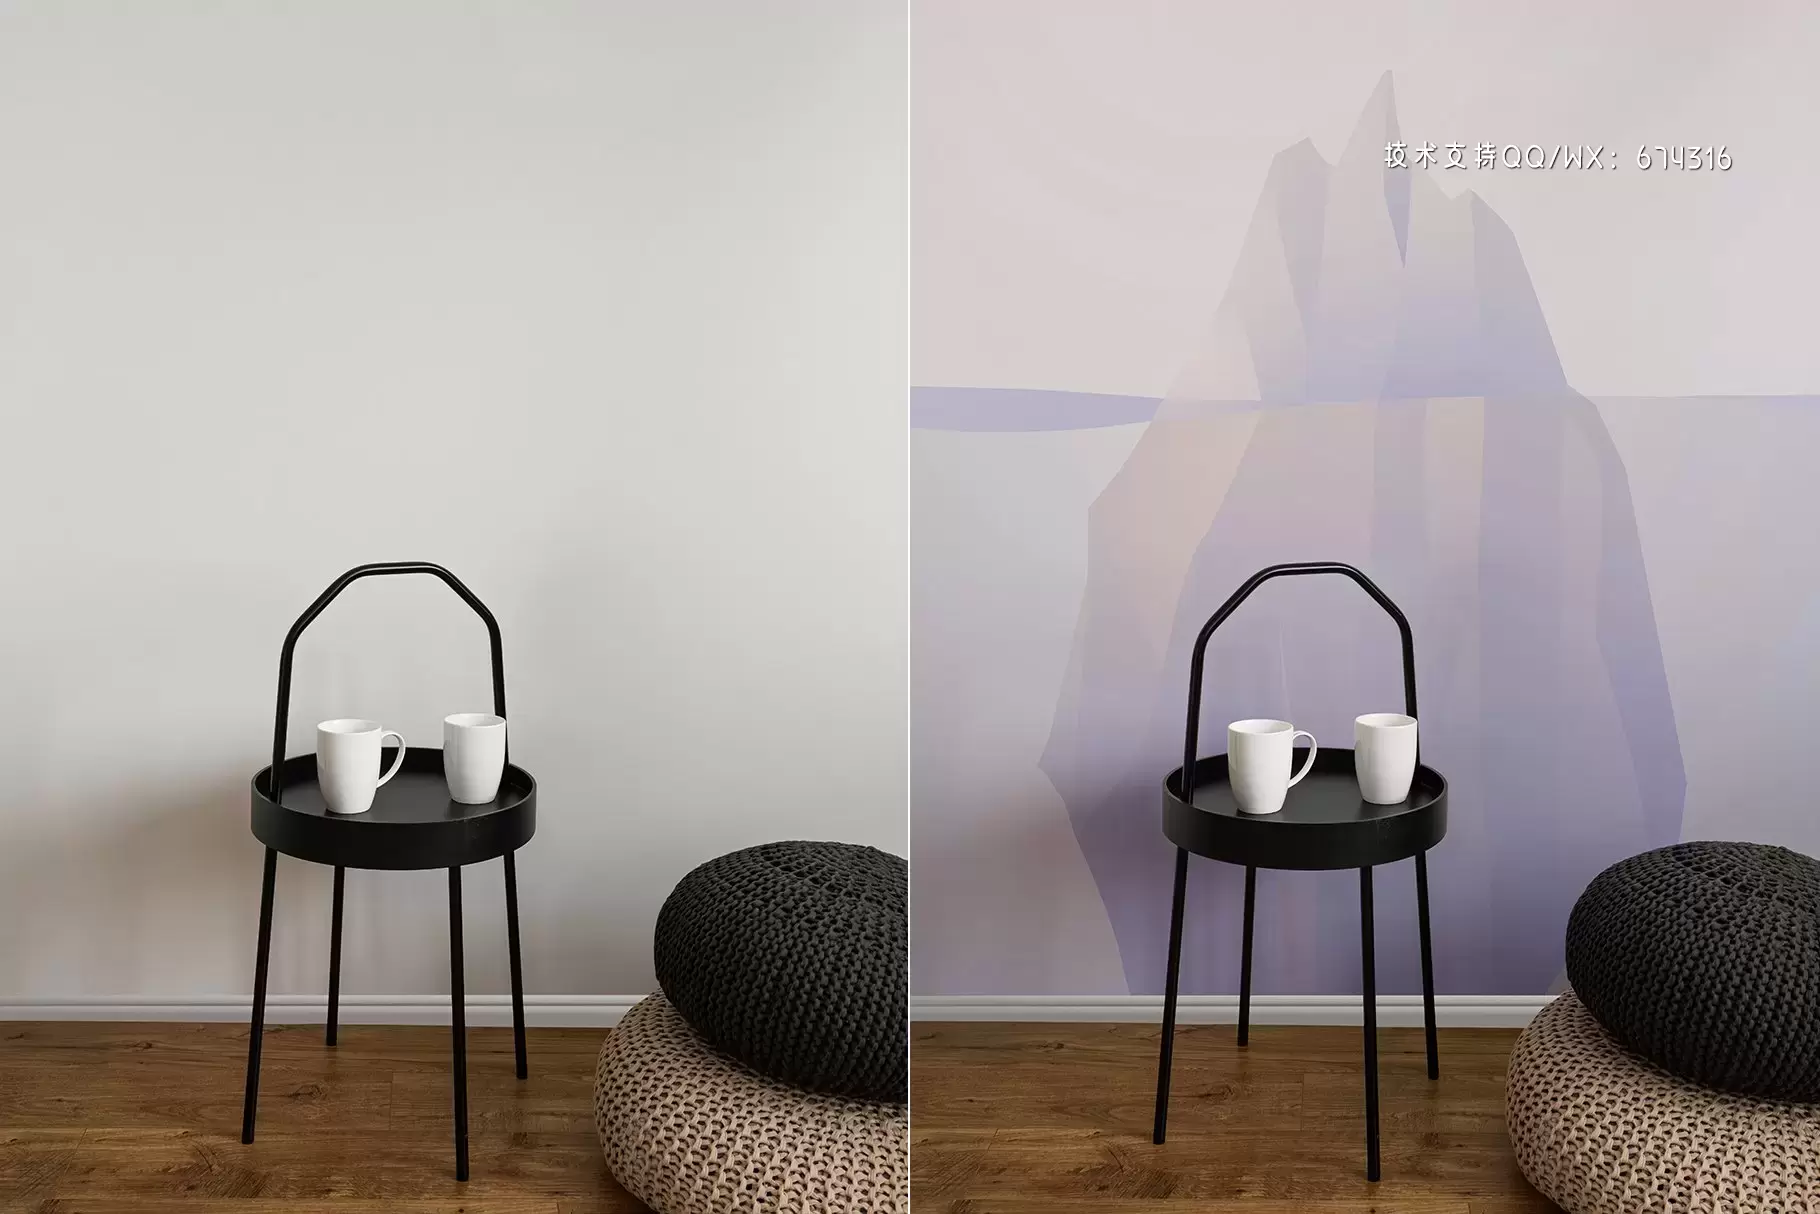 家居室内场景墙纸艺术图案展示样机[2.69GB,PSD]免费下载插图4